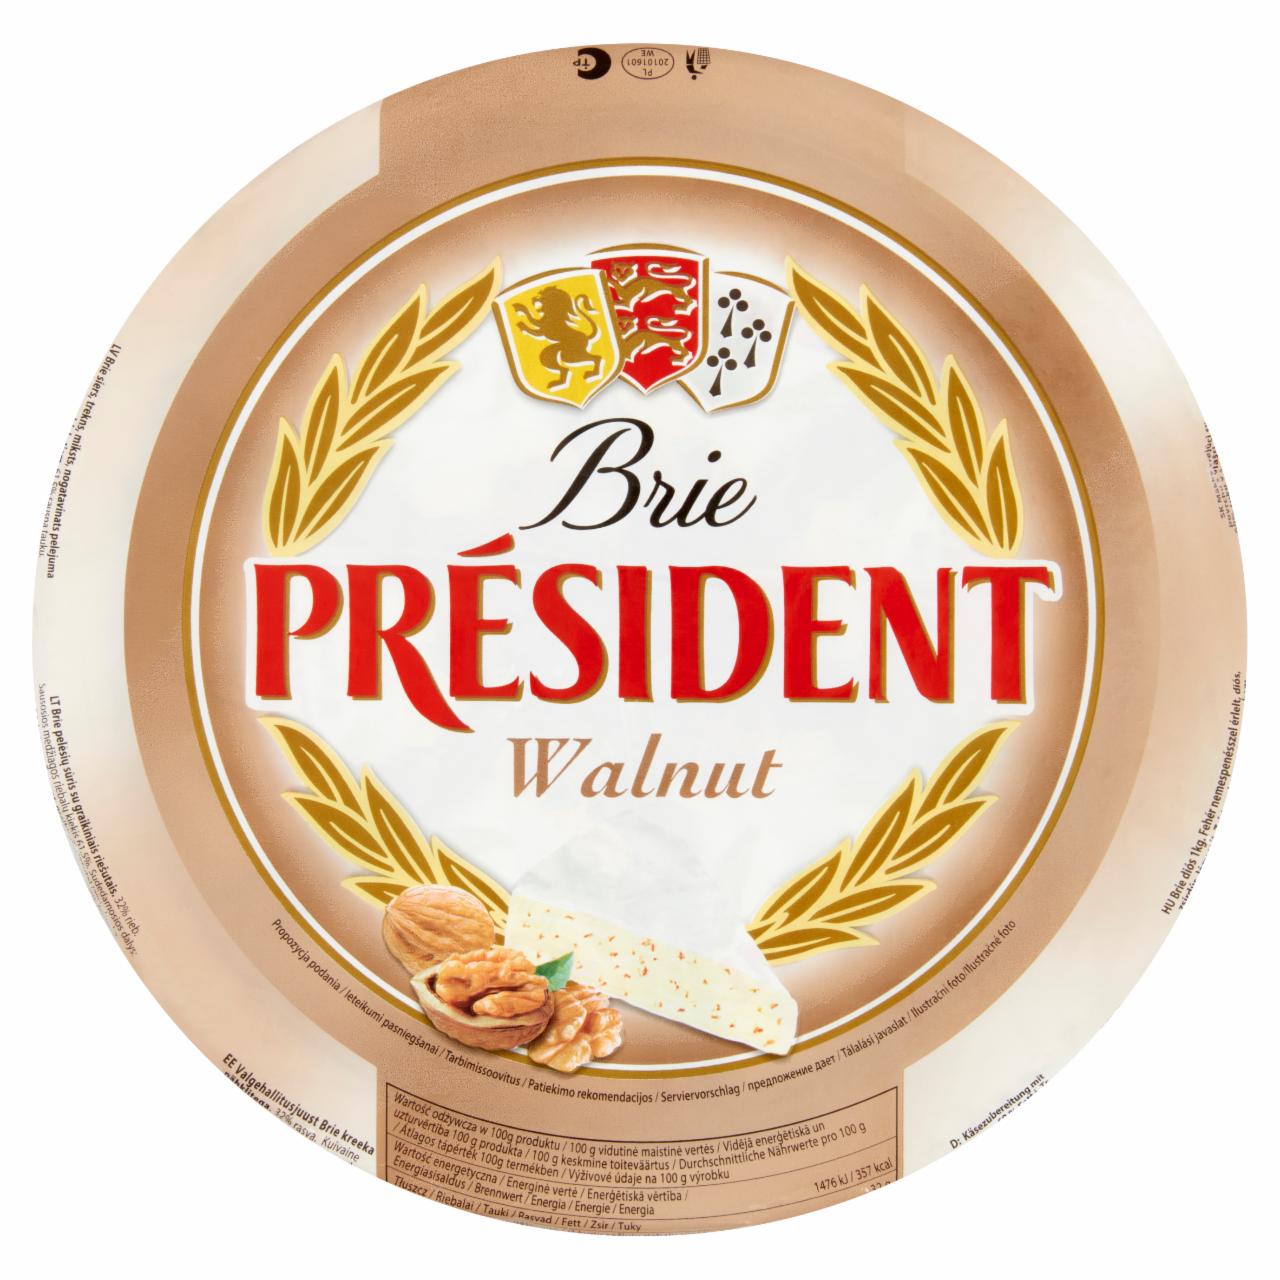 Képek - Président Brie diós lágy sajt